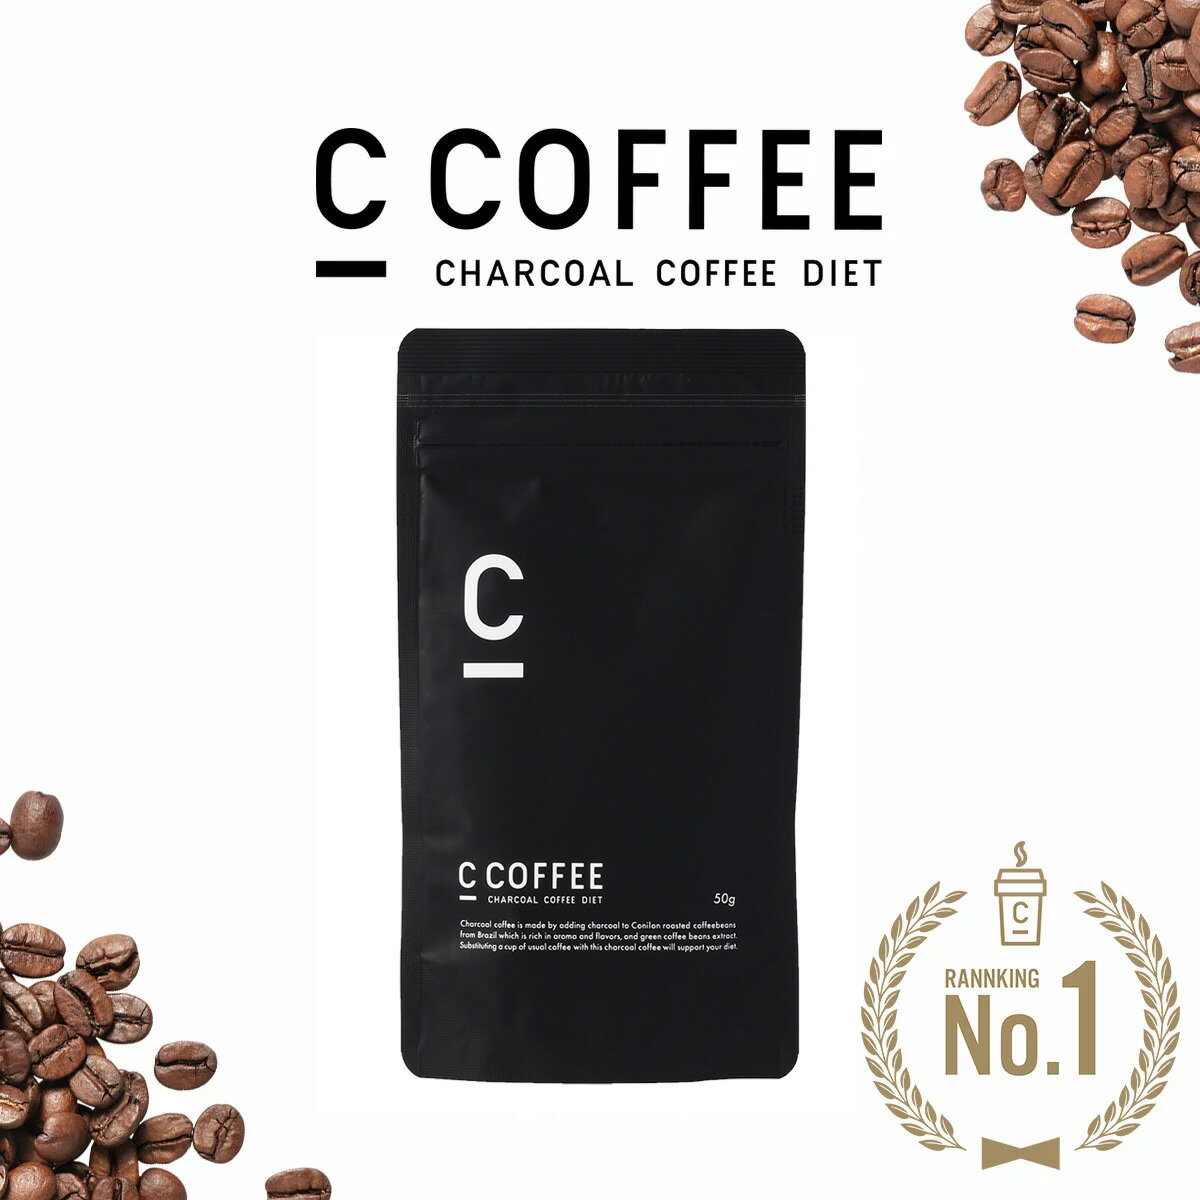 【公式】C COFFEE ハーフサイズ 50g MCTオイル ダイエットコーヒー チャコールコーヒー 炭コーヒー ダイエット コーヒー 珈琲 シーコーヒー ccoffee チャコールクレンズ お試しサイズ トライアル